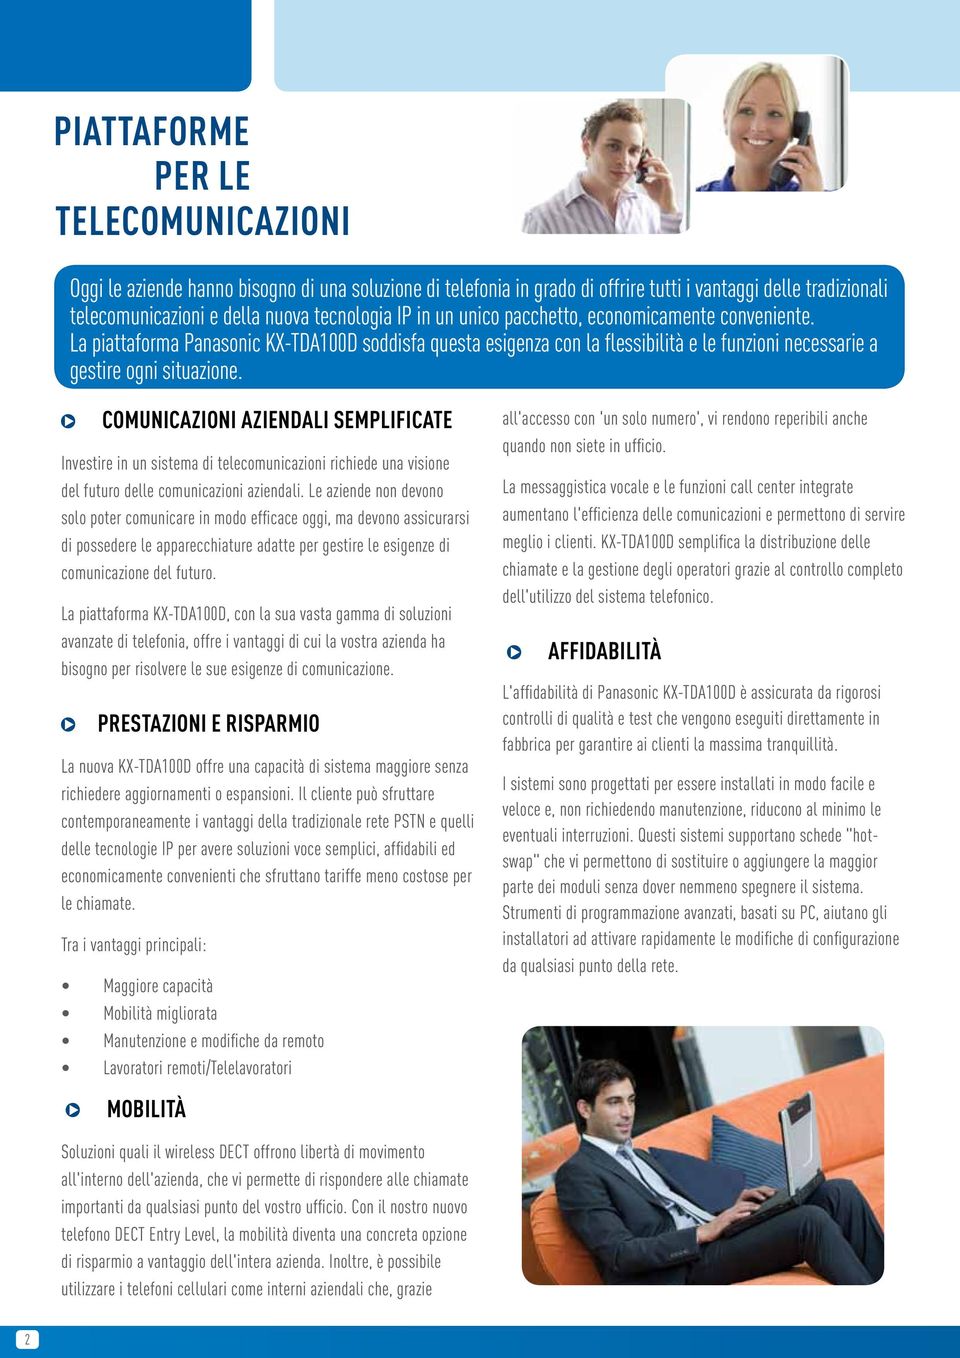 COMUNICAZIONI AZIENDALI SEMPLIFICATE Investire in un sistema di telecomunicazioni richiede una visione del futuro delle comunicazioni aziendali.